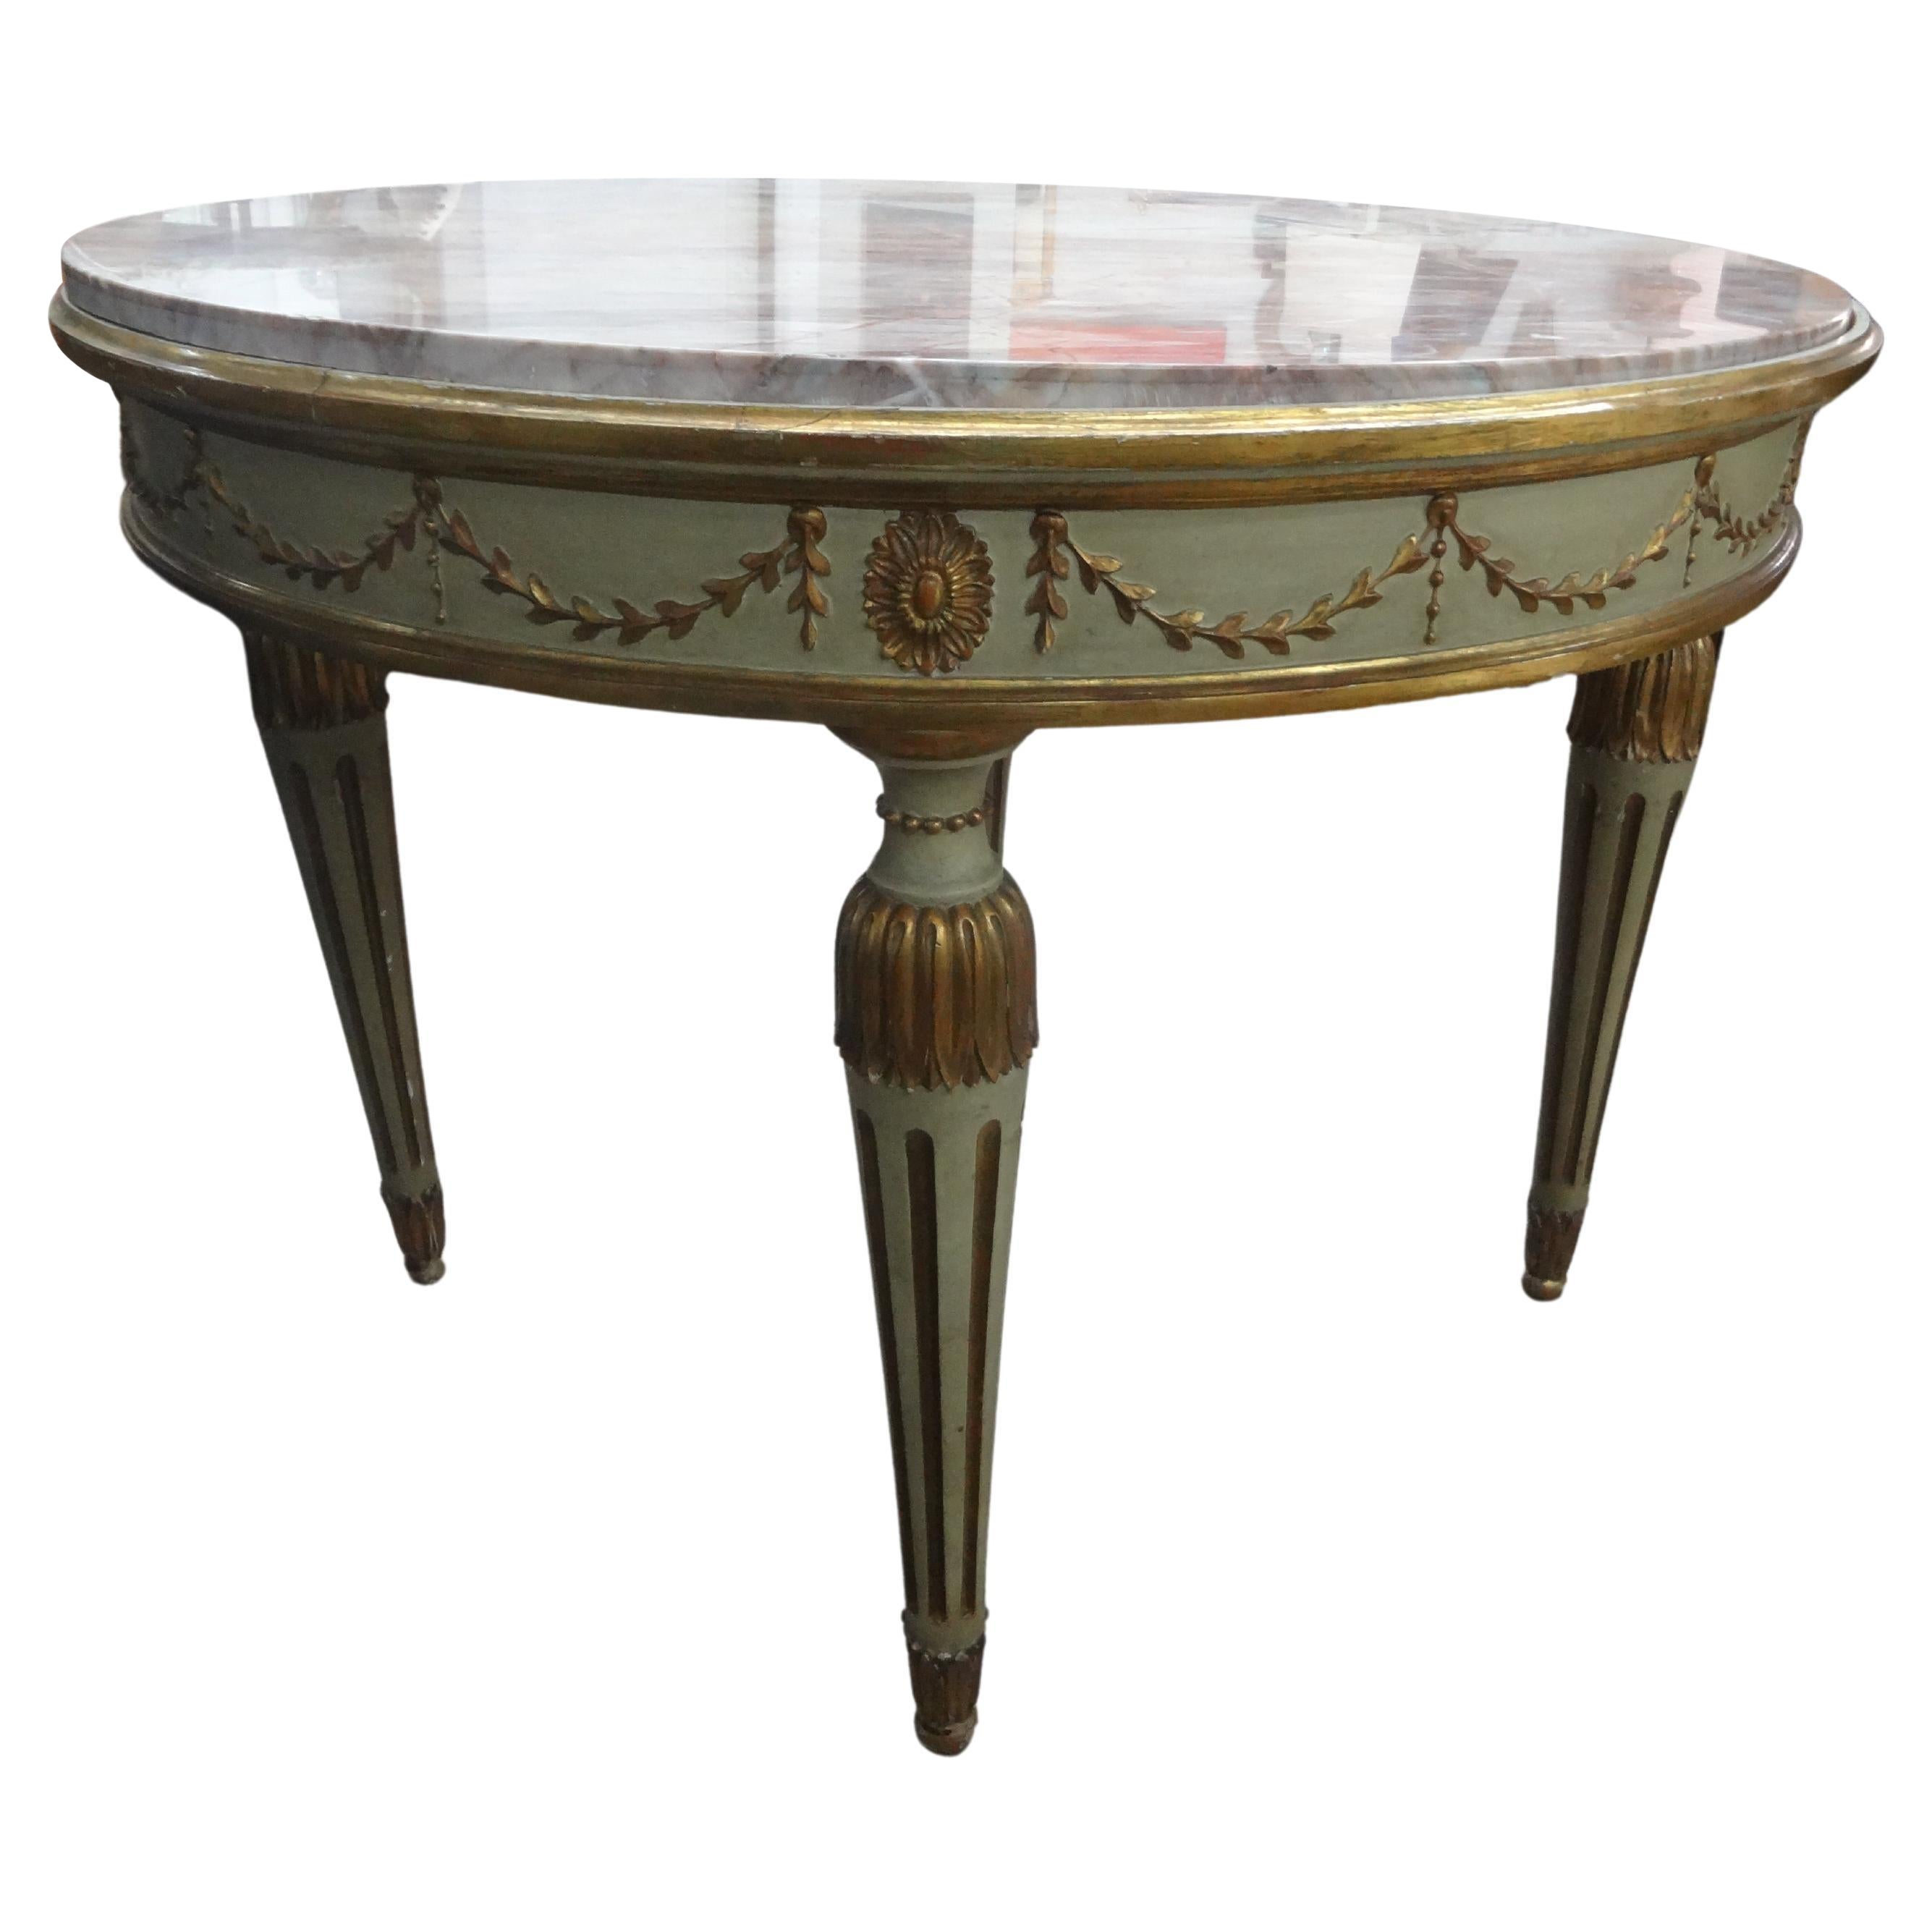 Table centrale de style néoclassique italien peinte et dorée à la feuille